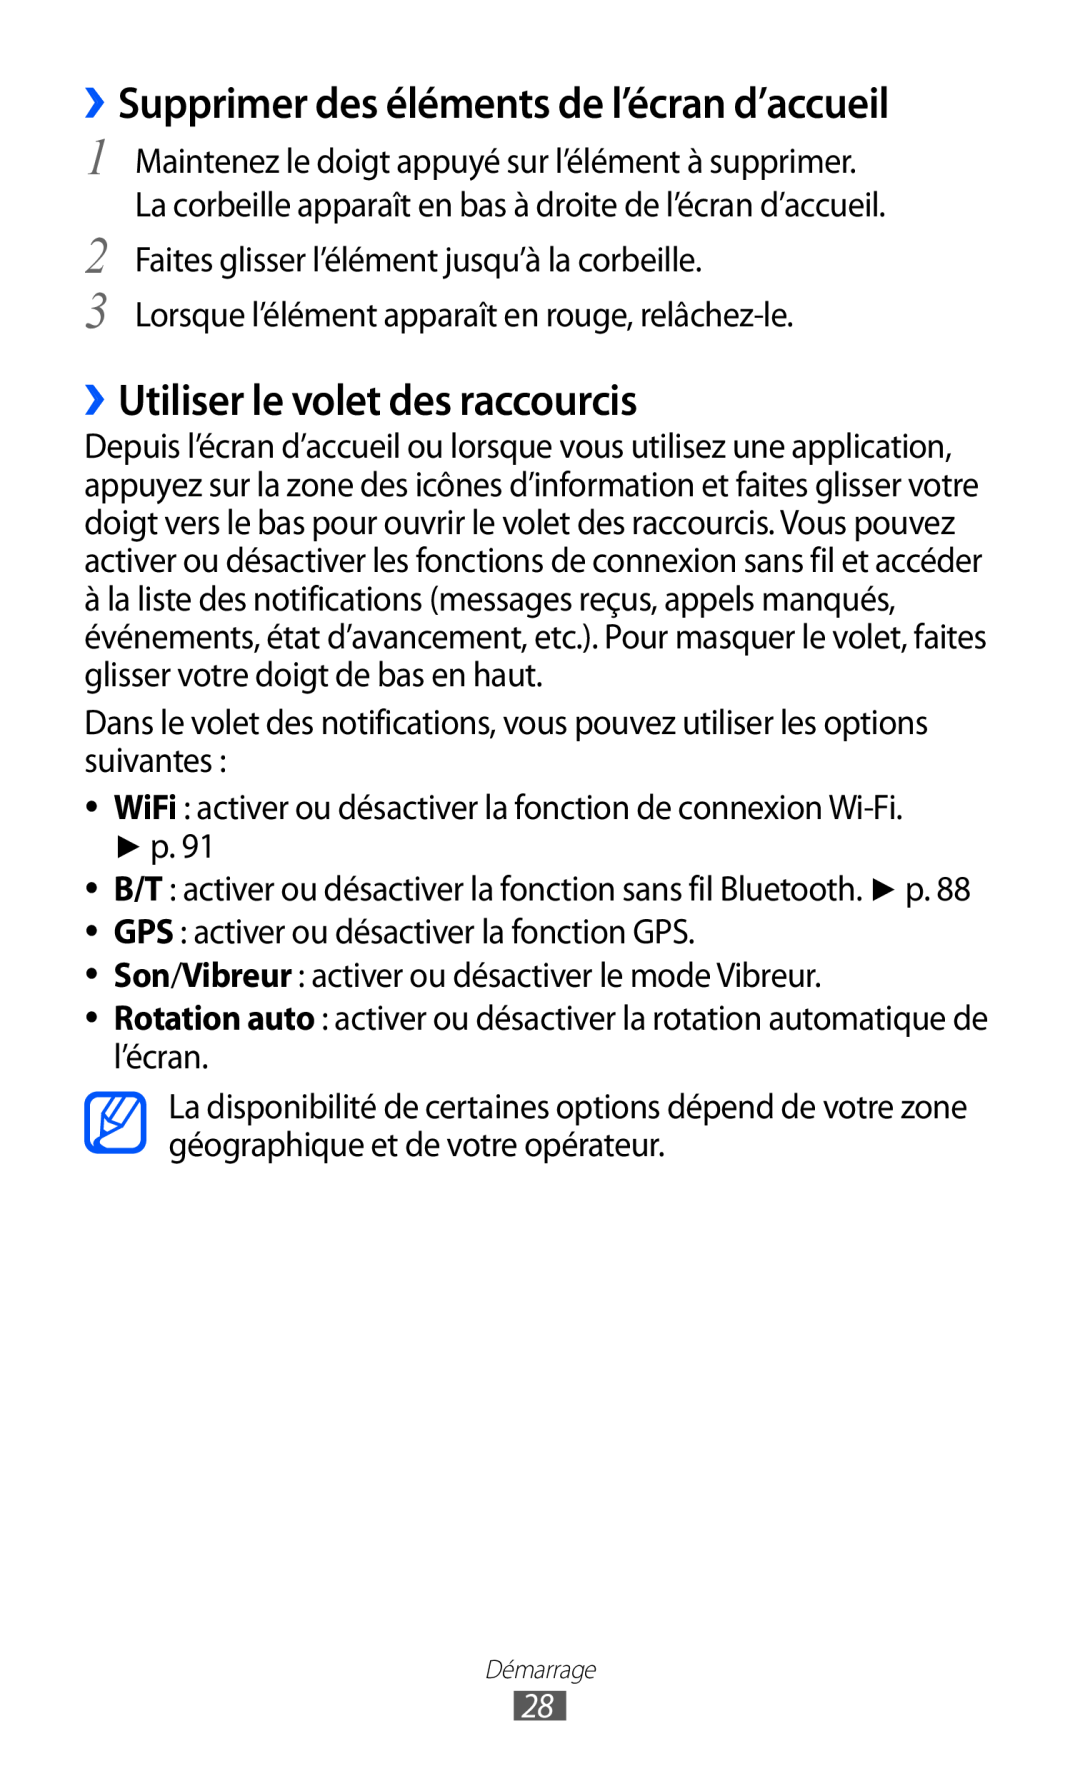 Samsung GT-B5510WSAXEF, GT-B5510CAANRJ ››Supprimer des éléments de l’écran d’accueil, ››Utiliser le volet des raccourcis 